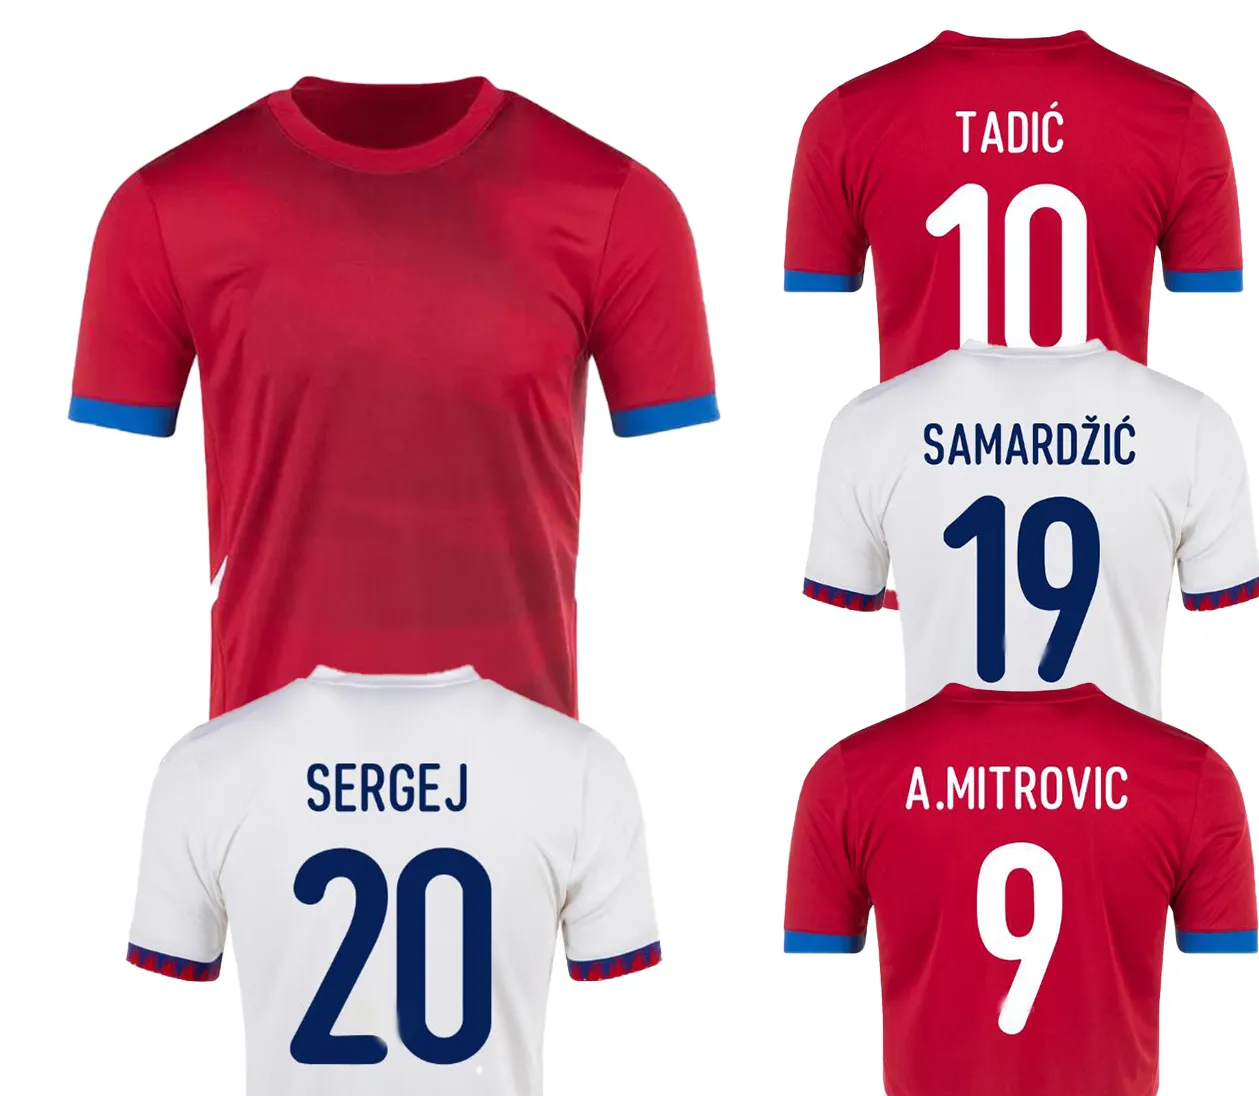 24-25 Serbia Home Soccer Maglie Thai di qualità Thai Numero personalizzato Shirt Football Uniforms Sports Wholesale Populante Dhgate Sconto Fashion Design